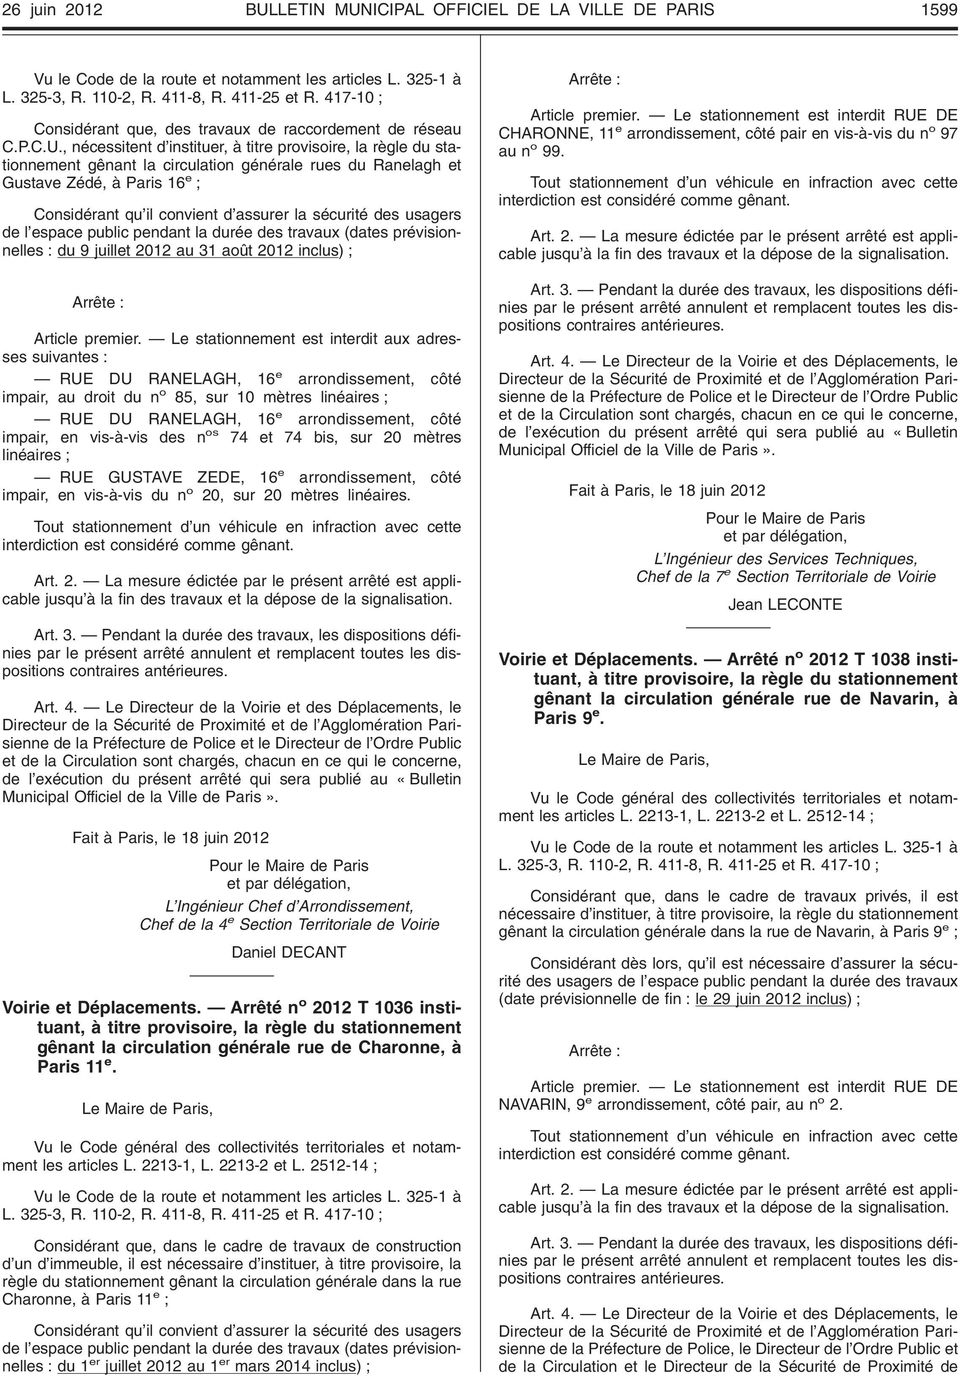 ICIPAL OFFICIEL DE LA VILLE DE PARIS 1599 L. 325-3, R. 110-2, R. 411-8, R. 411-25 et R. 417-10 Considérant que, des travaux de raccordement de réseau C.P.C.U.